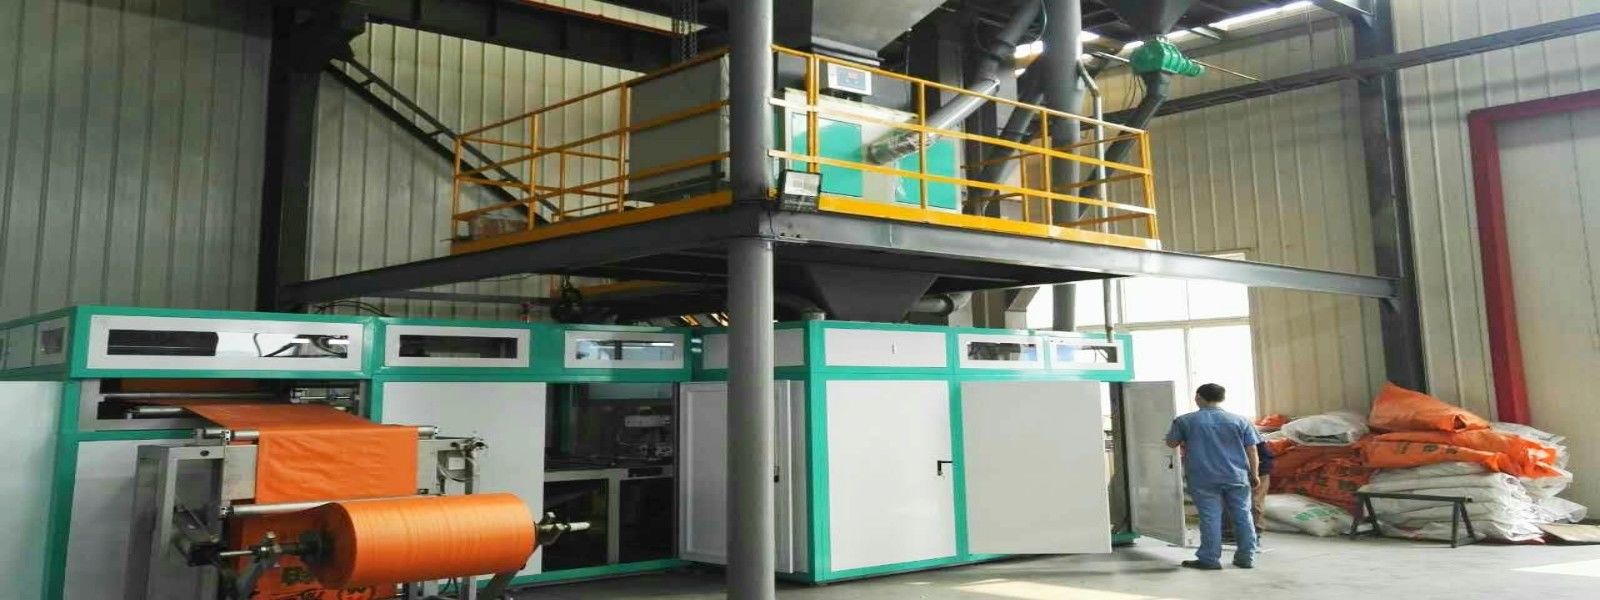 chất lượng Máy đóng gói tự động nhà máy sản xuất